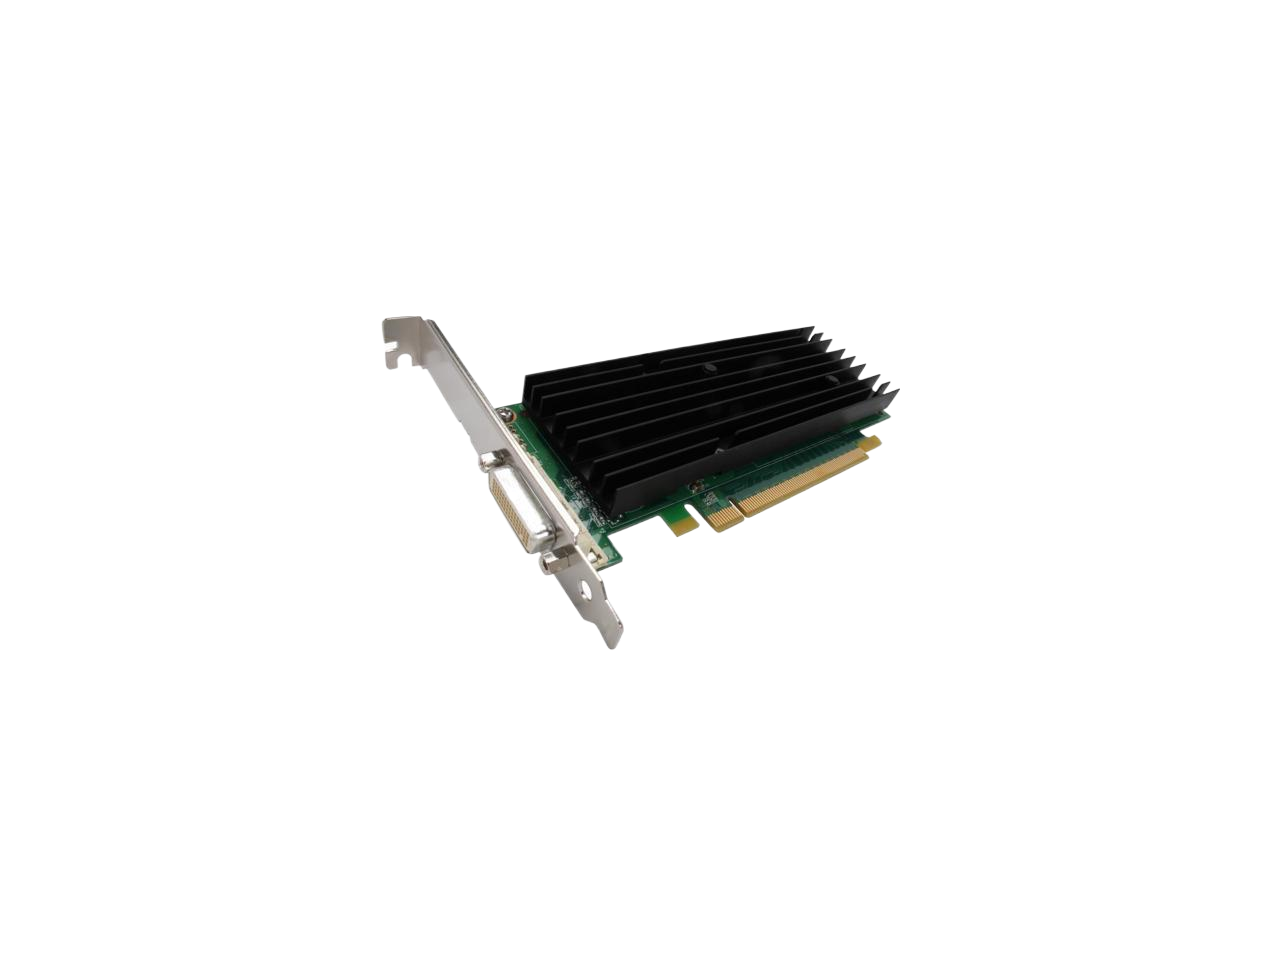 PNY Quadro NVS 290 256MB 64-bit GDDR2 PCI Express x16 Low Profile Workstation Video Card VCQ290NVS-PCIEX16-PB